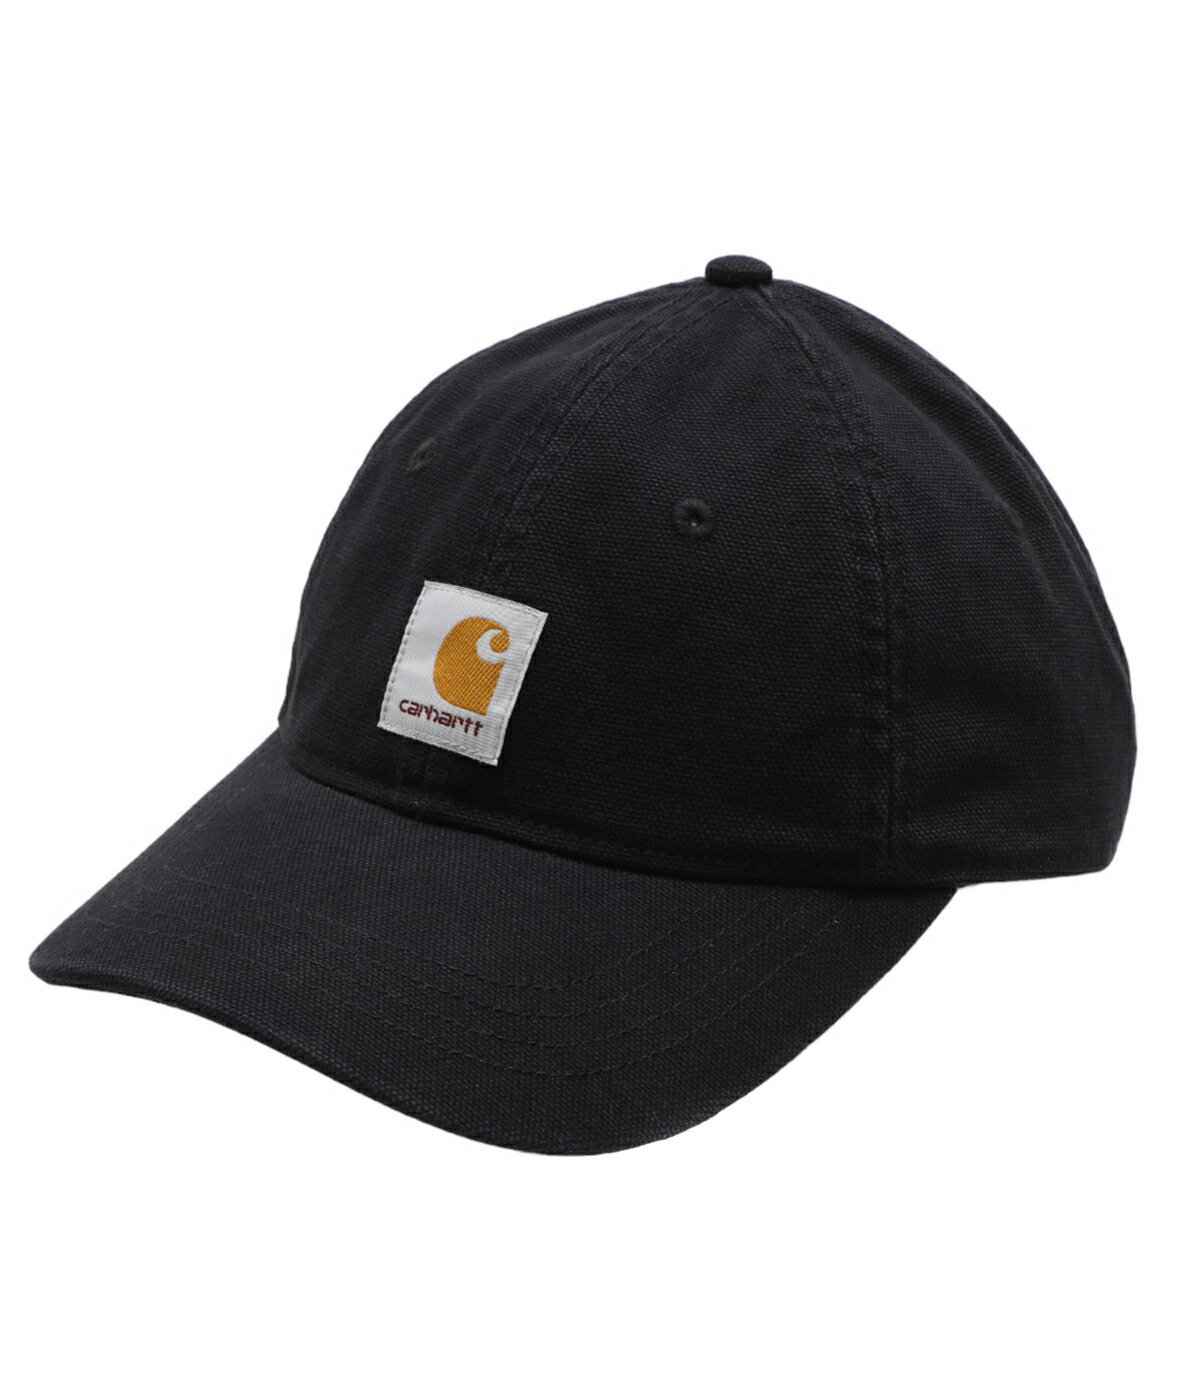 カーハート  帽子 メンズ Carhartt WIP / カーハート ワークインプログレス : DUNES CAP / 全3色 : キャップ デューンスキャップ C ロゴ スクエアラベル ガーメントダイ 帽子 コットン メンズ : I031621【NOA】